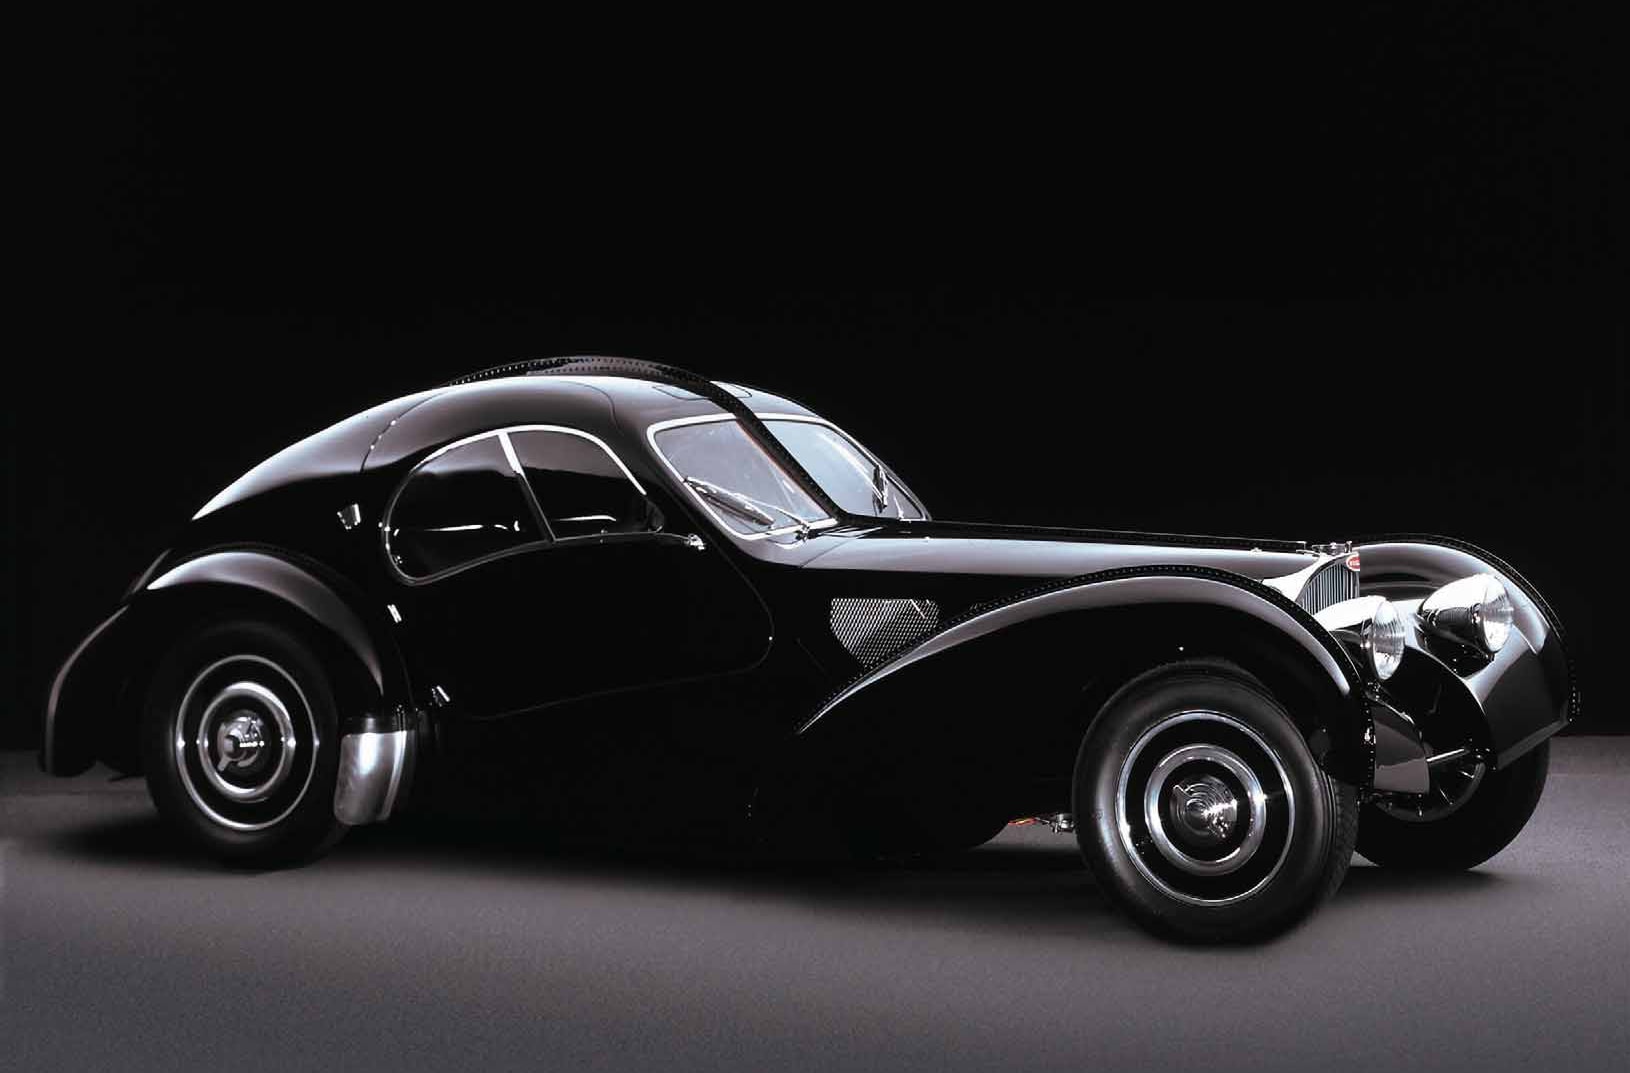 Τα πιο σπάνια και ακριβά αυτοκίνητα στον κόσμο: Bugatti Type 57 SC Atlantic του 1936